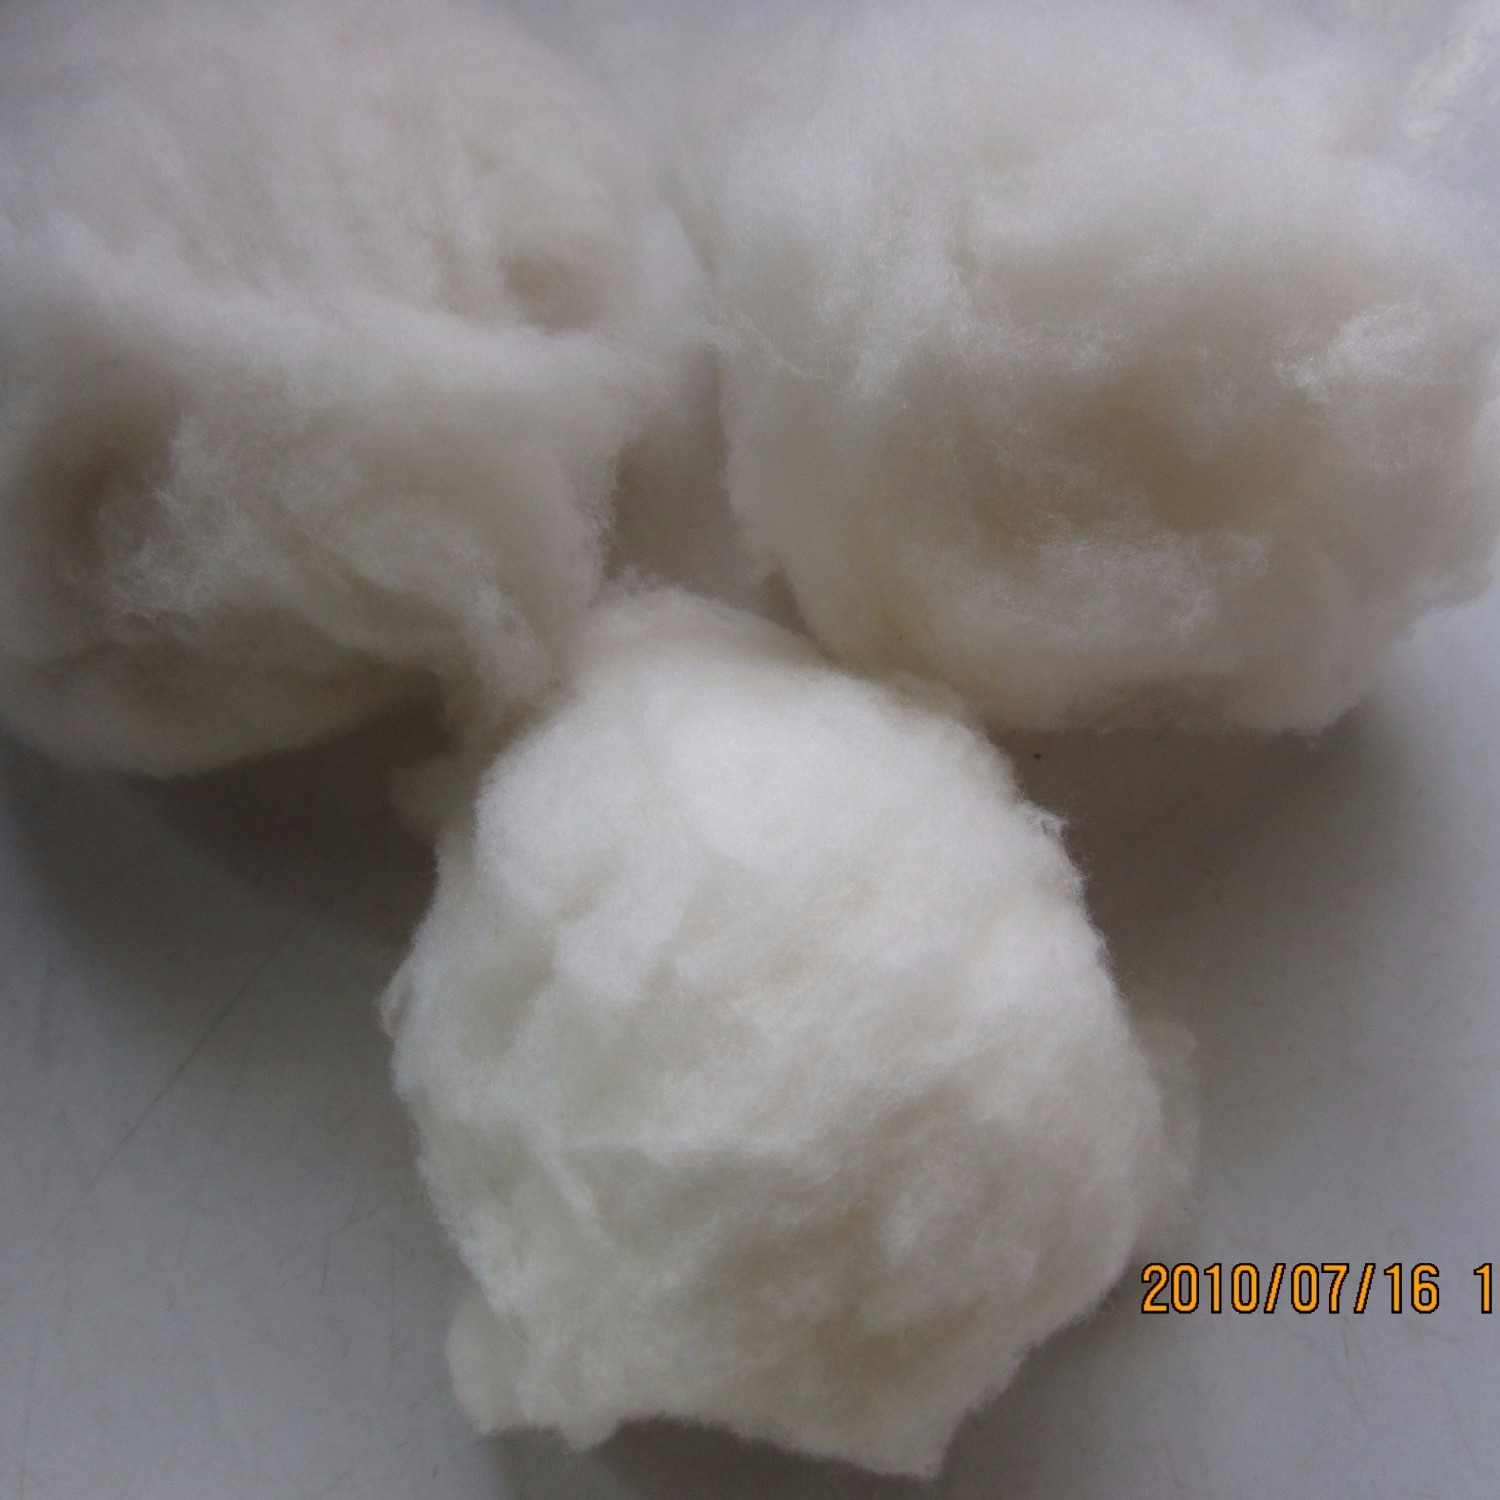 原料 牦牛绒 直销可免费拿样包邮 驼绒 绵羊绒 高端羊绒精品 山羊绒原料2